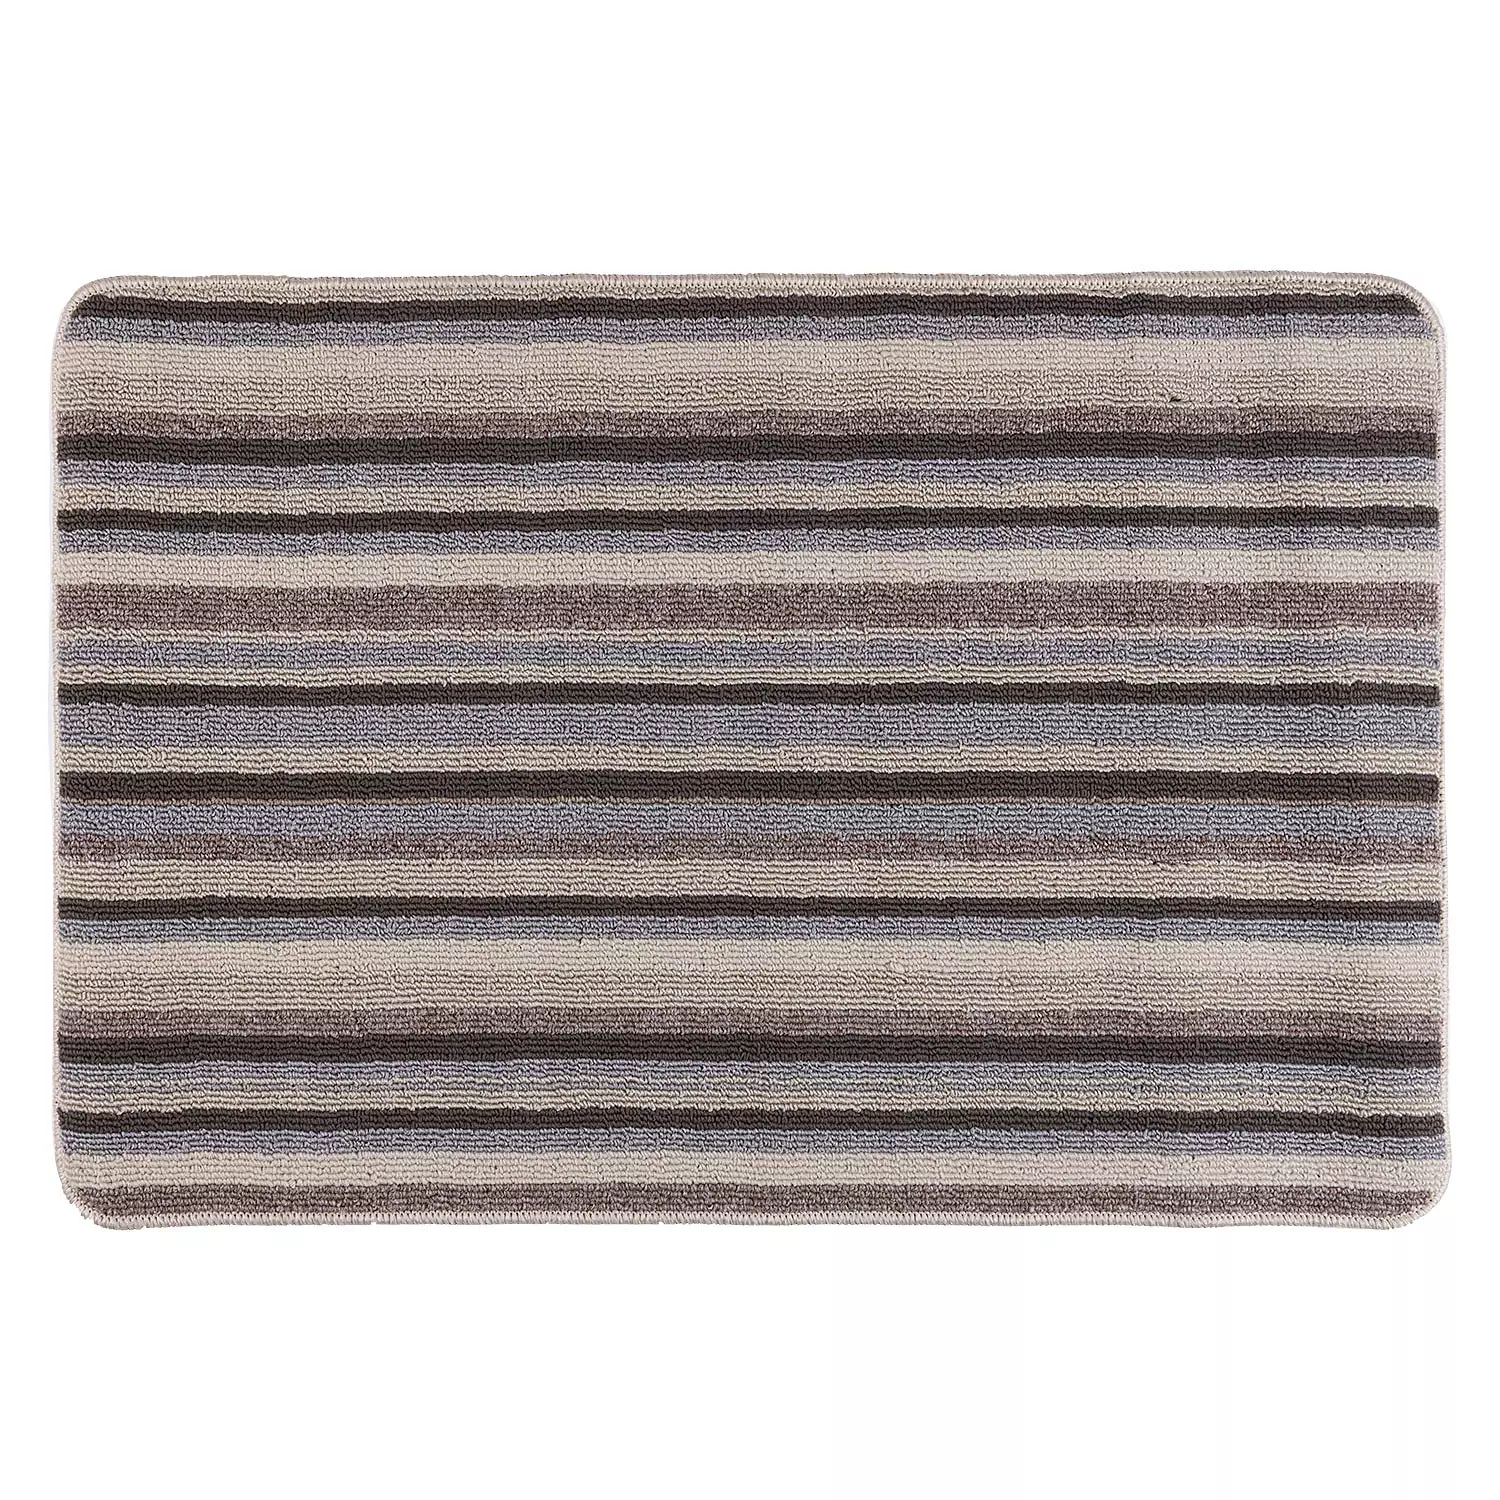 ALLURA - Striped mat, 3'x4', beige tones